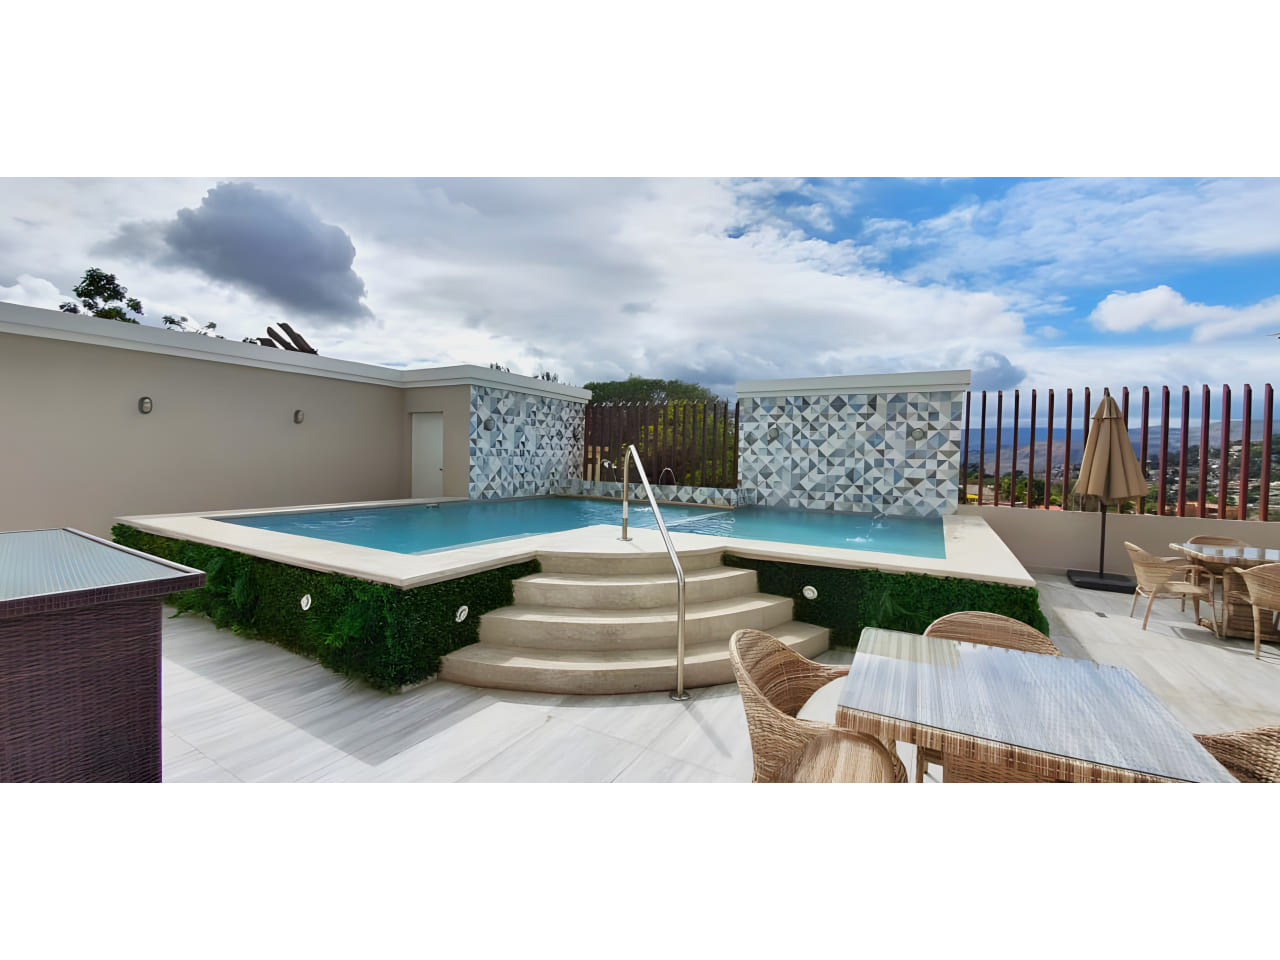 El área de piscina cuenta con mesas en la terraza, un área de piscina con bella agua azul y una impresionante vista de la ciudad.